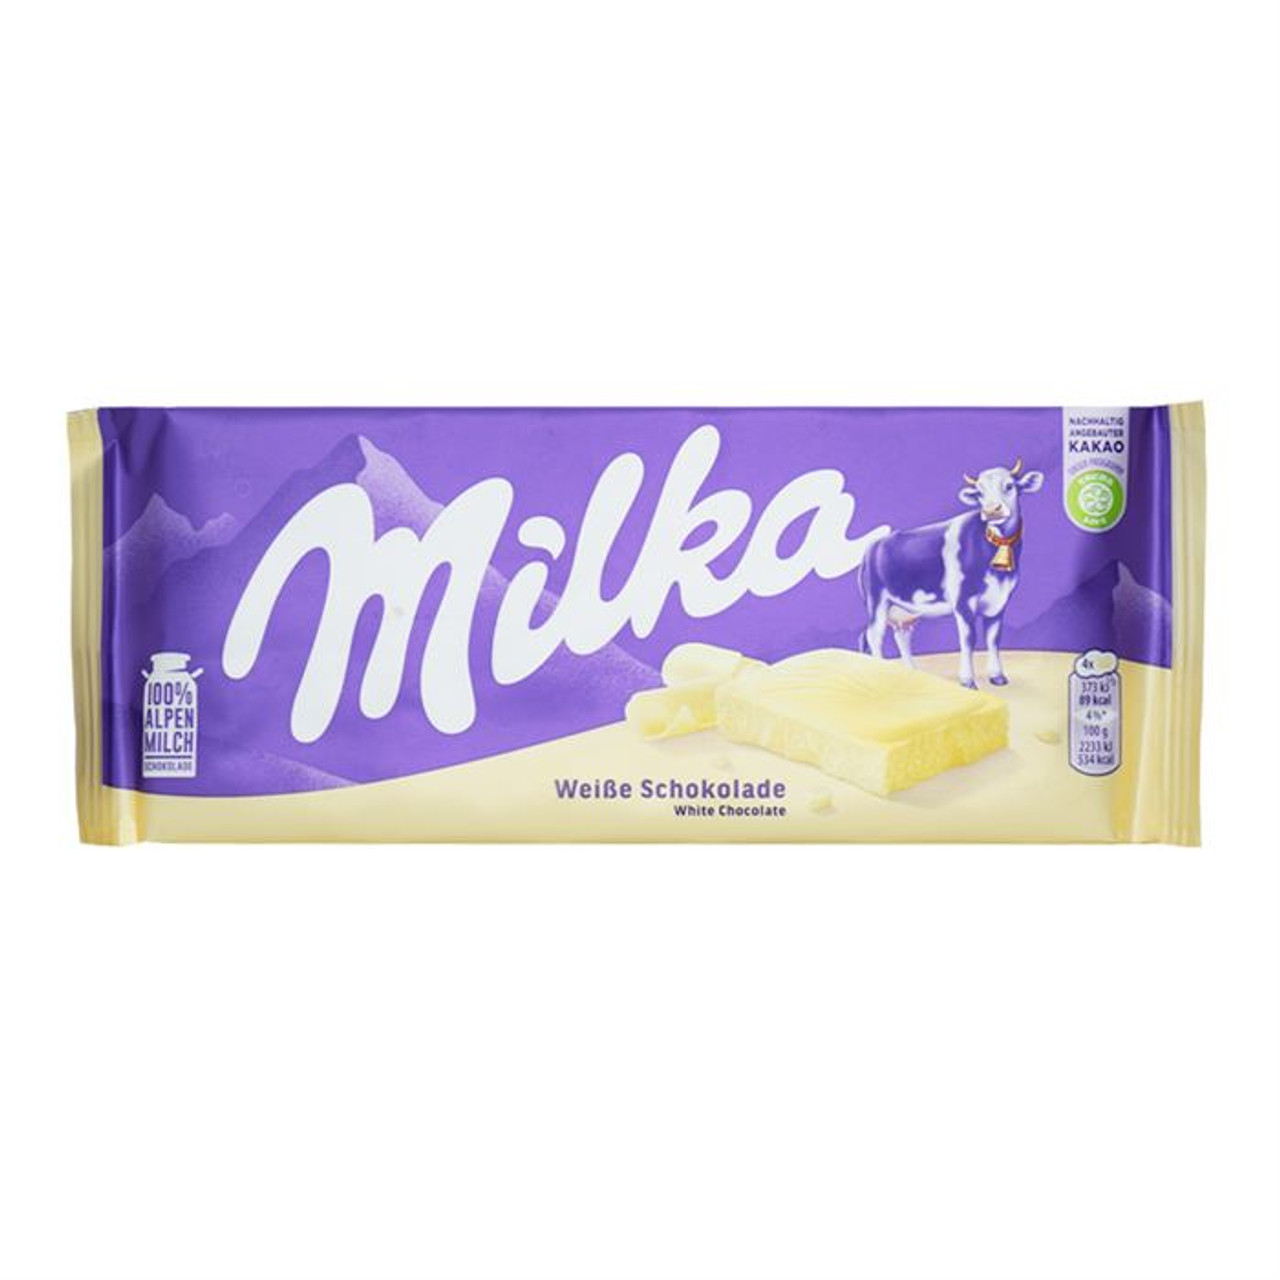 Milka White Chocolate, 100g 